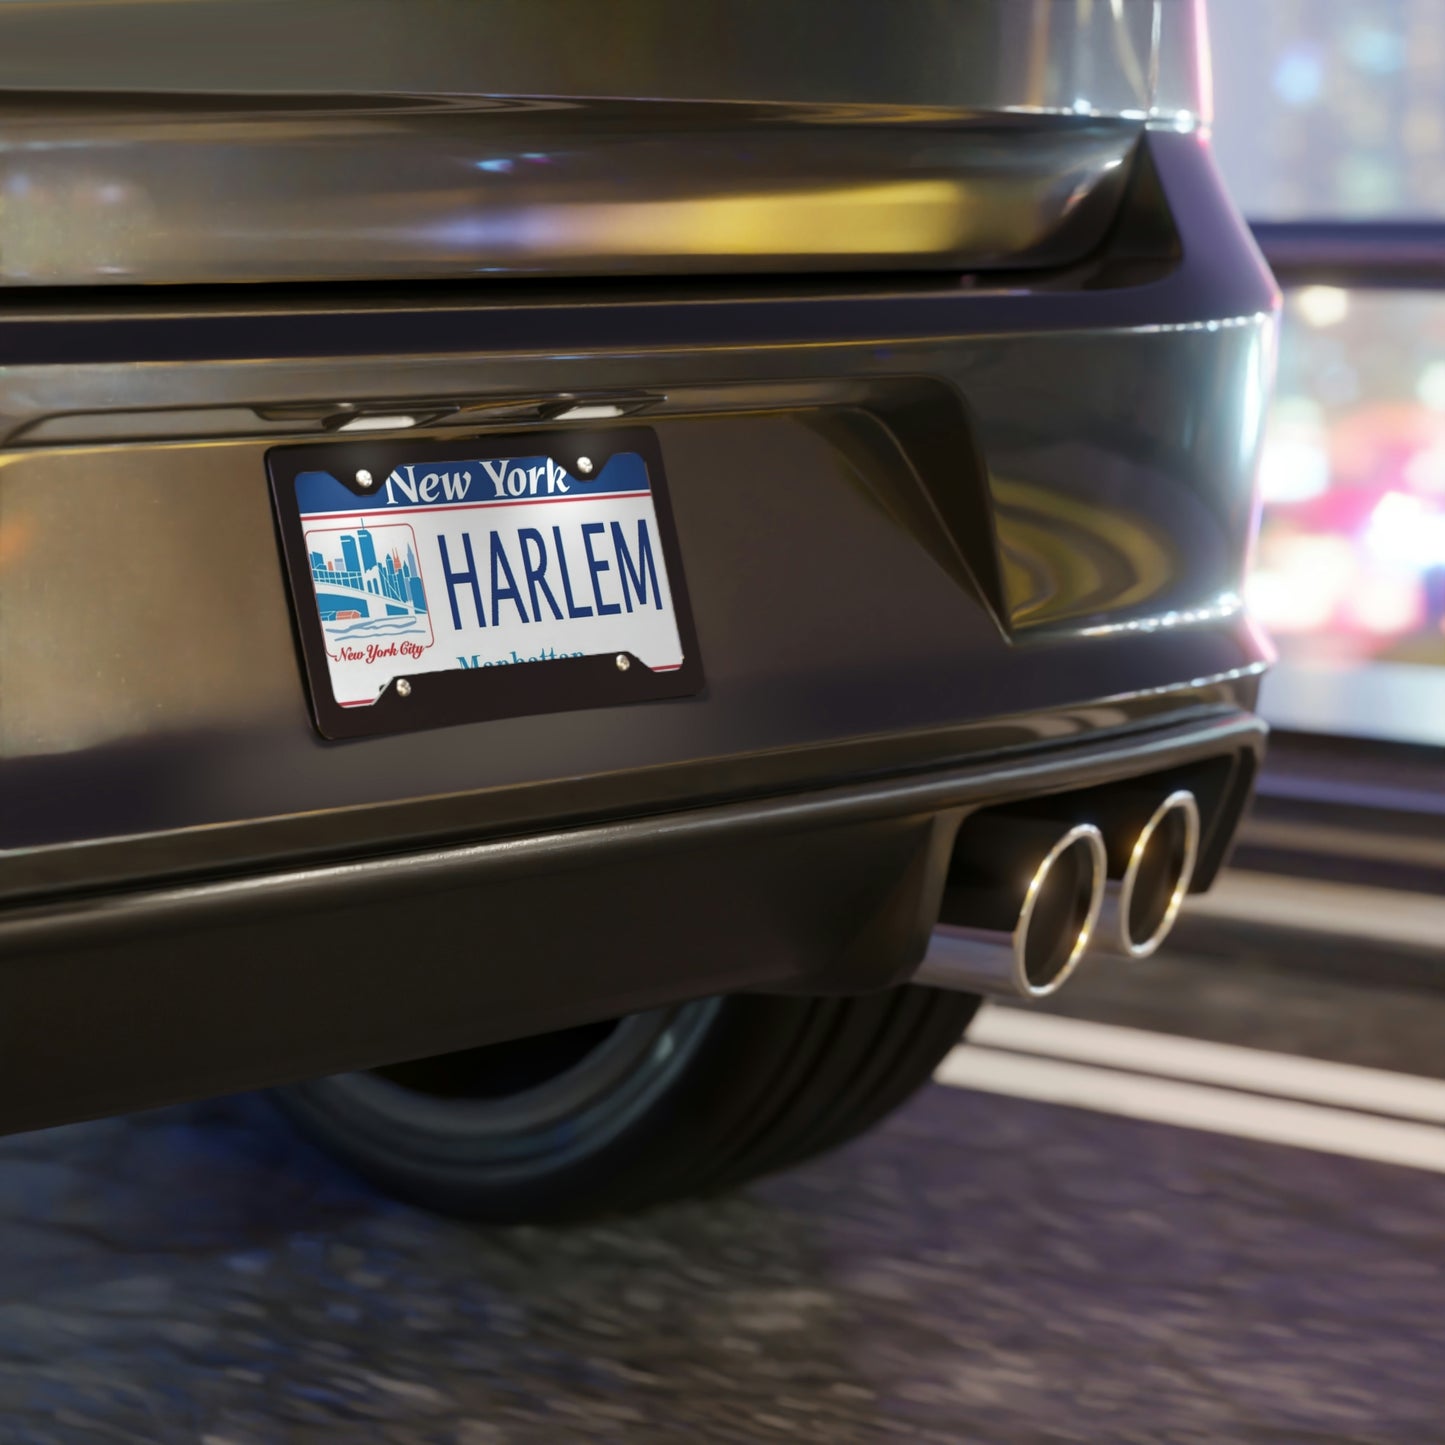 Harlem NY License Plate Mounted On Vehicle